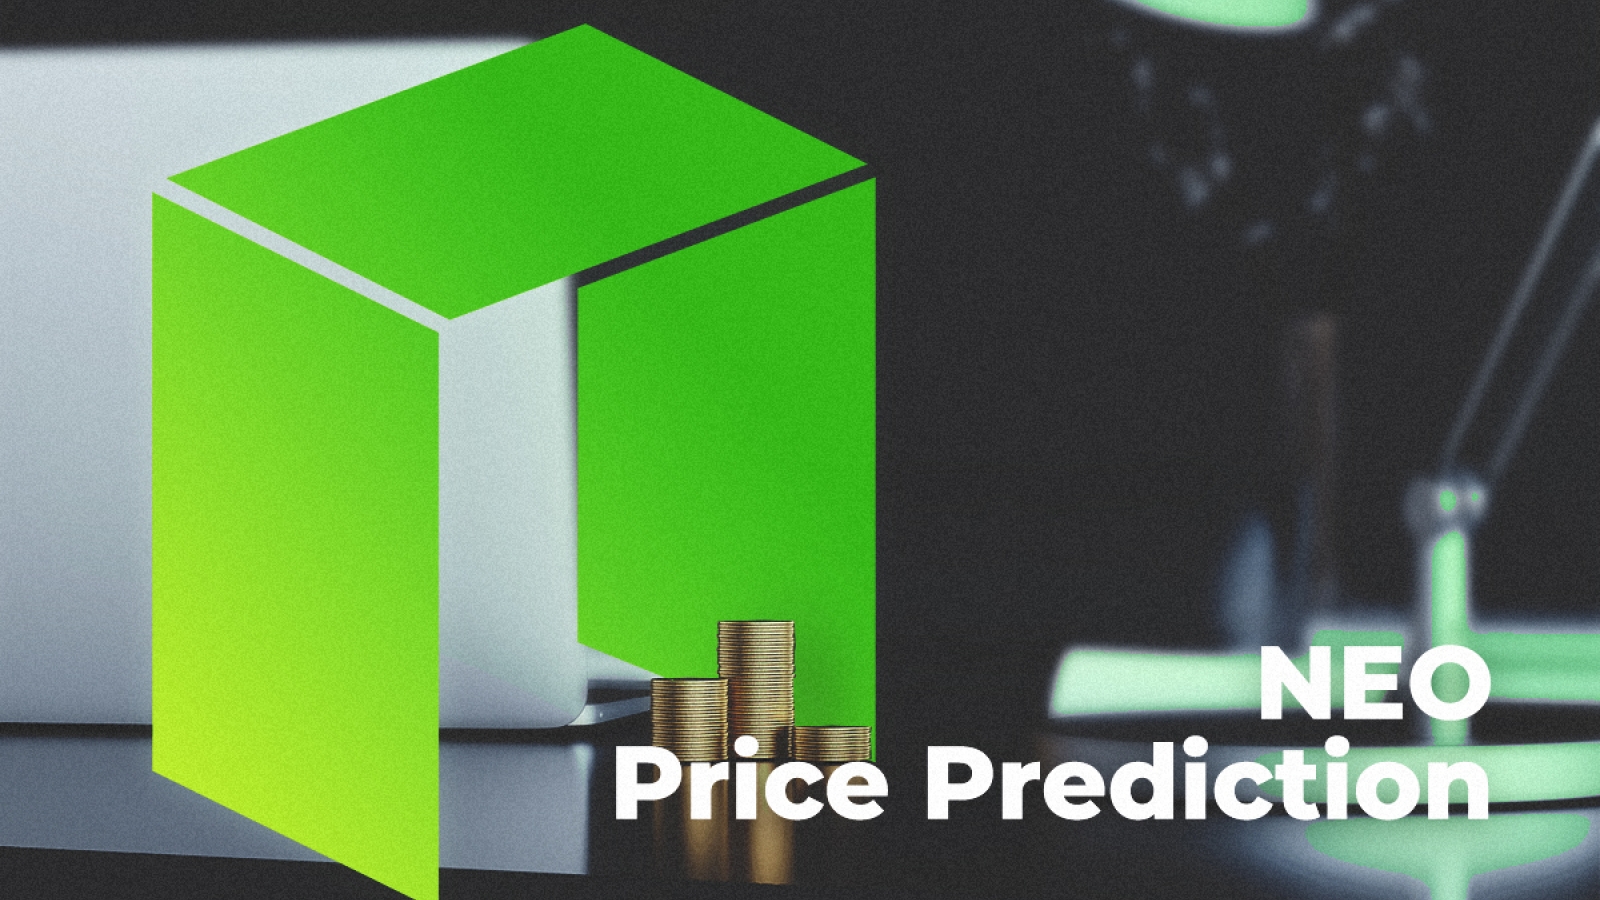 NEO Price Prediction - پیش بینی قیمت رمز ارز NEO: احتمال اصلاح گسترده ی قیمت در 16 دلار!